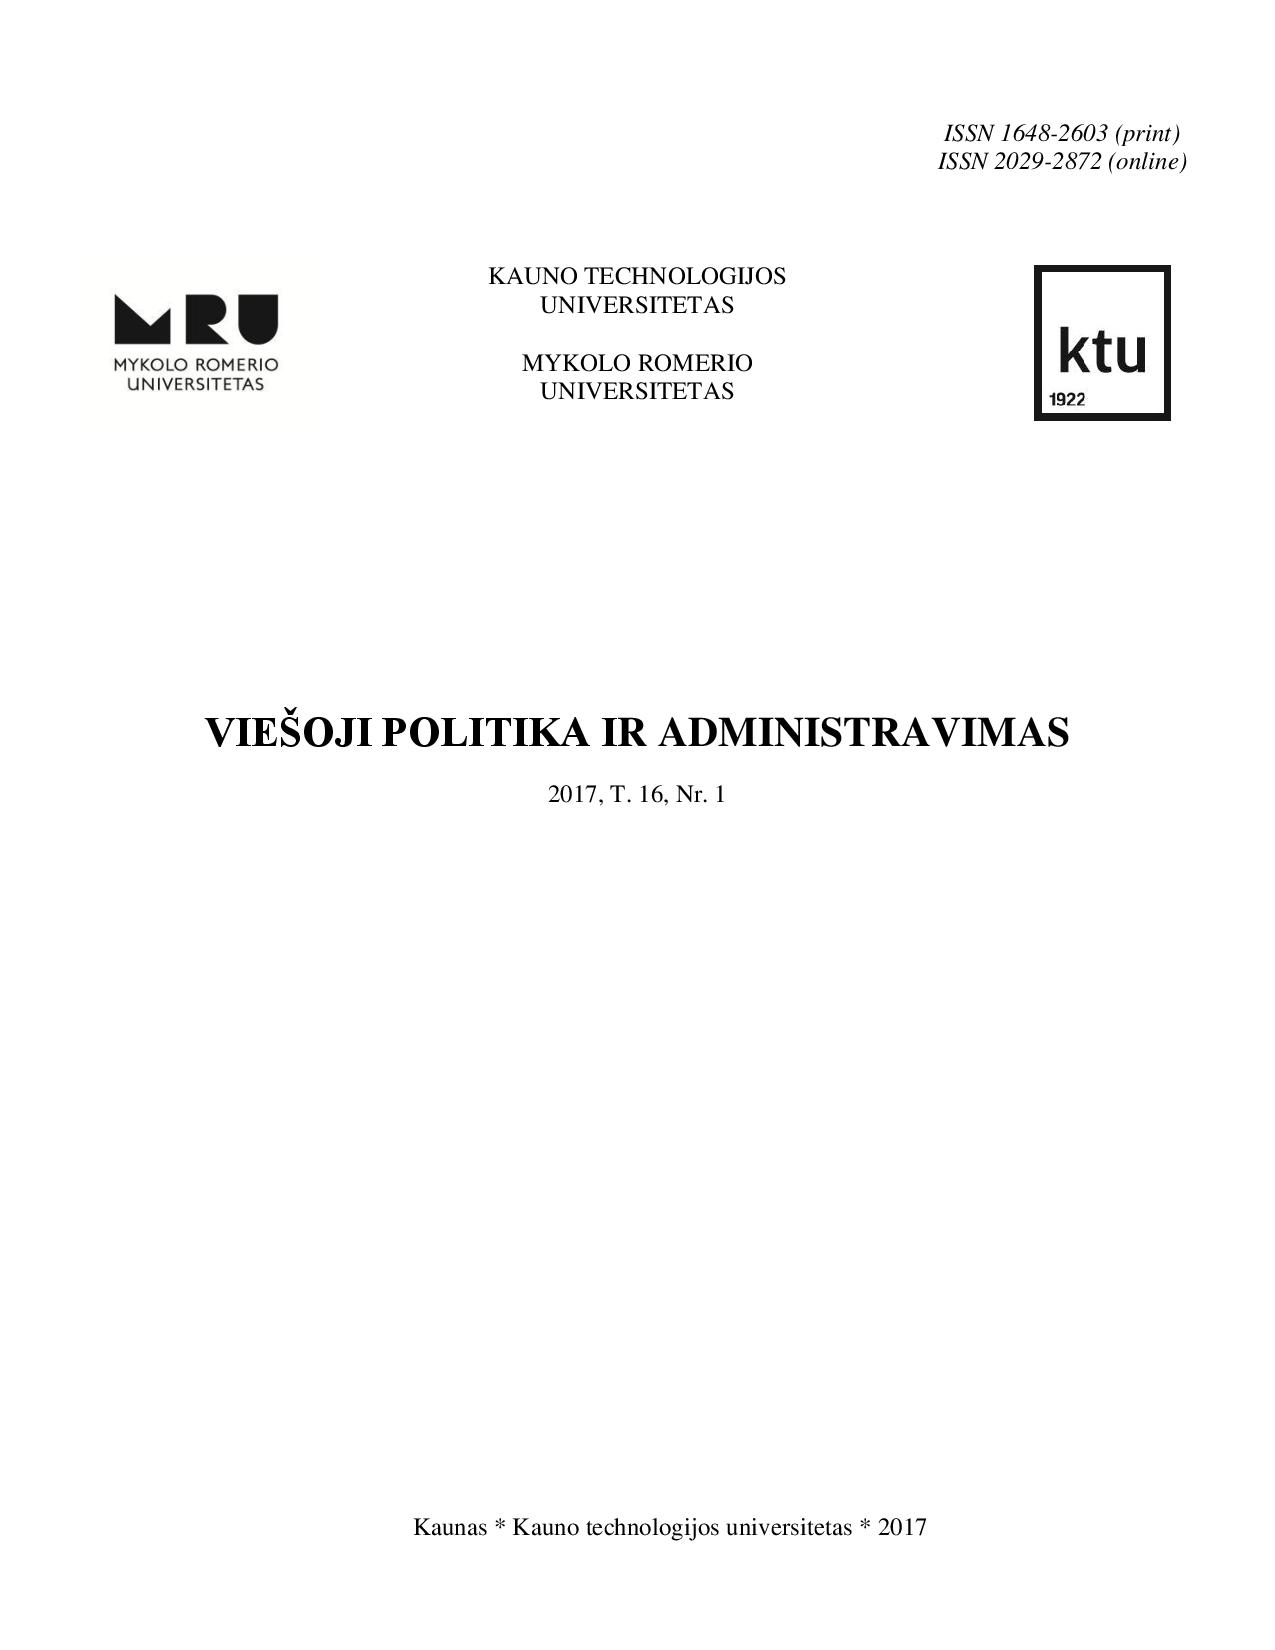 Partinis patronažas Lietuvos viešajame sektoriuje